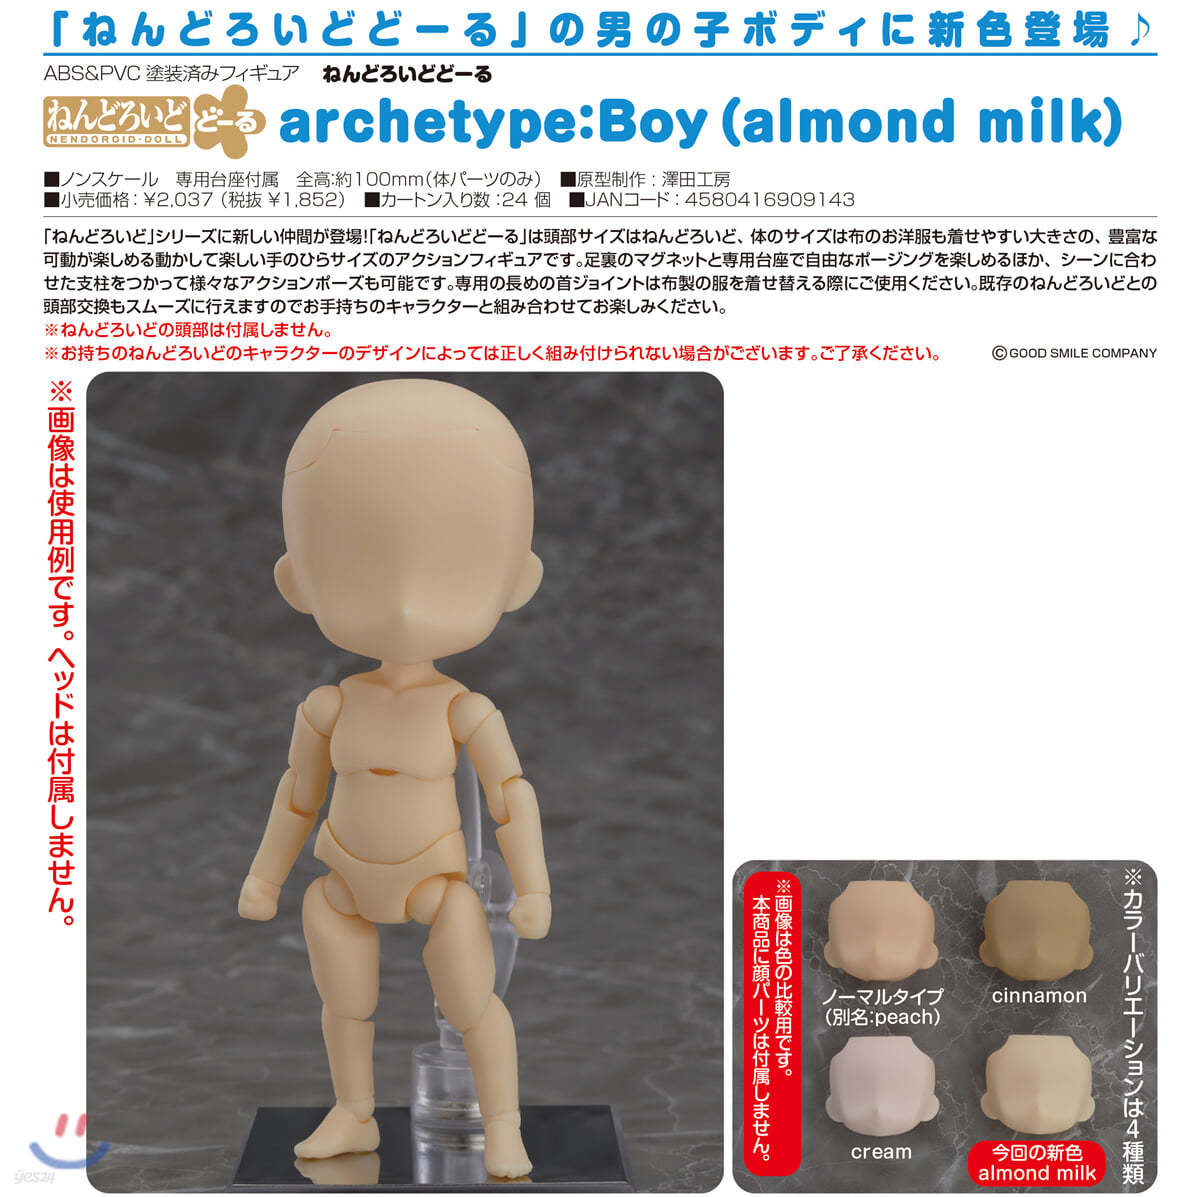 ねんどろいど ど-る archetype:Boy almond milk